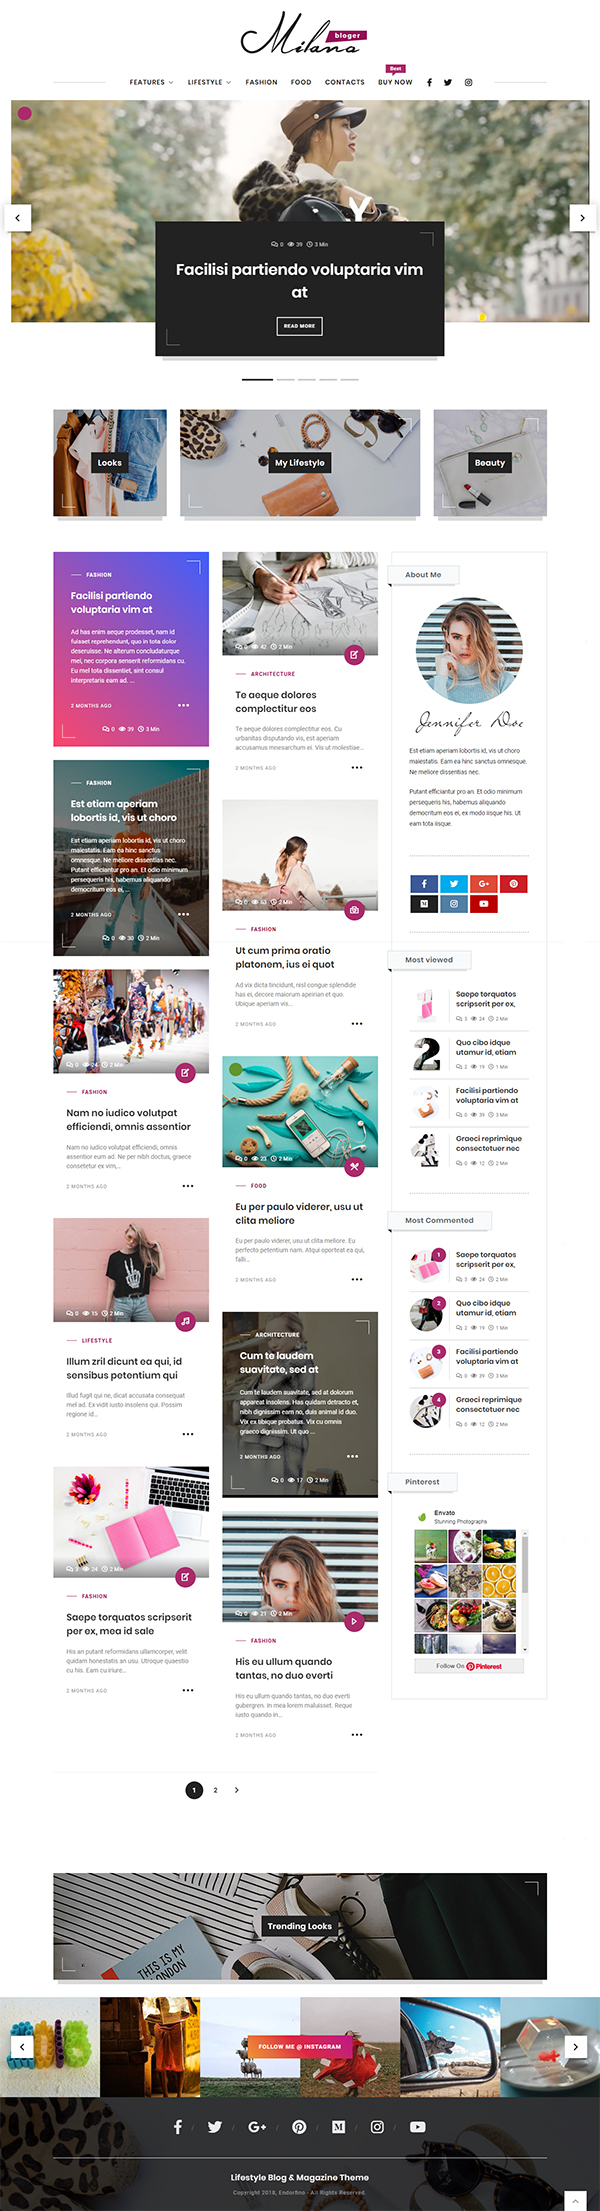 Endorfino - Lifestyle Blog & Magazine WordPress Theme